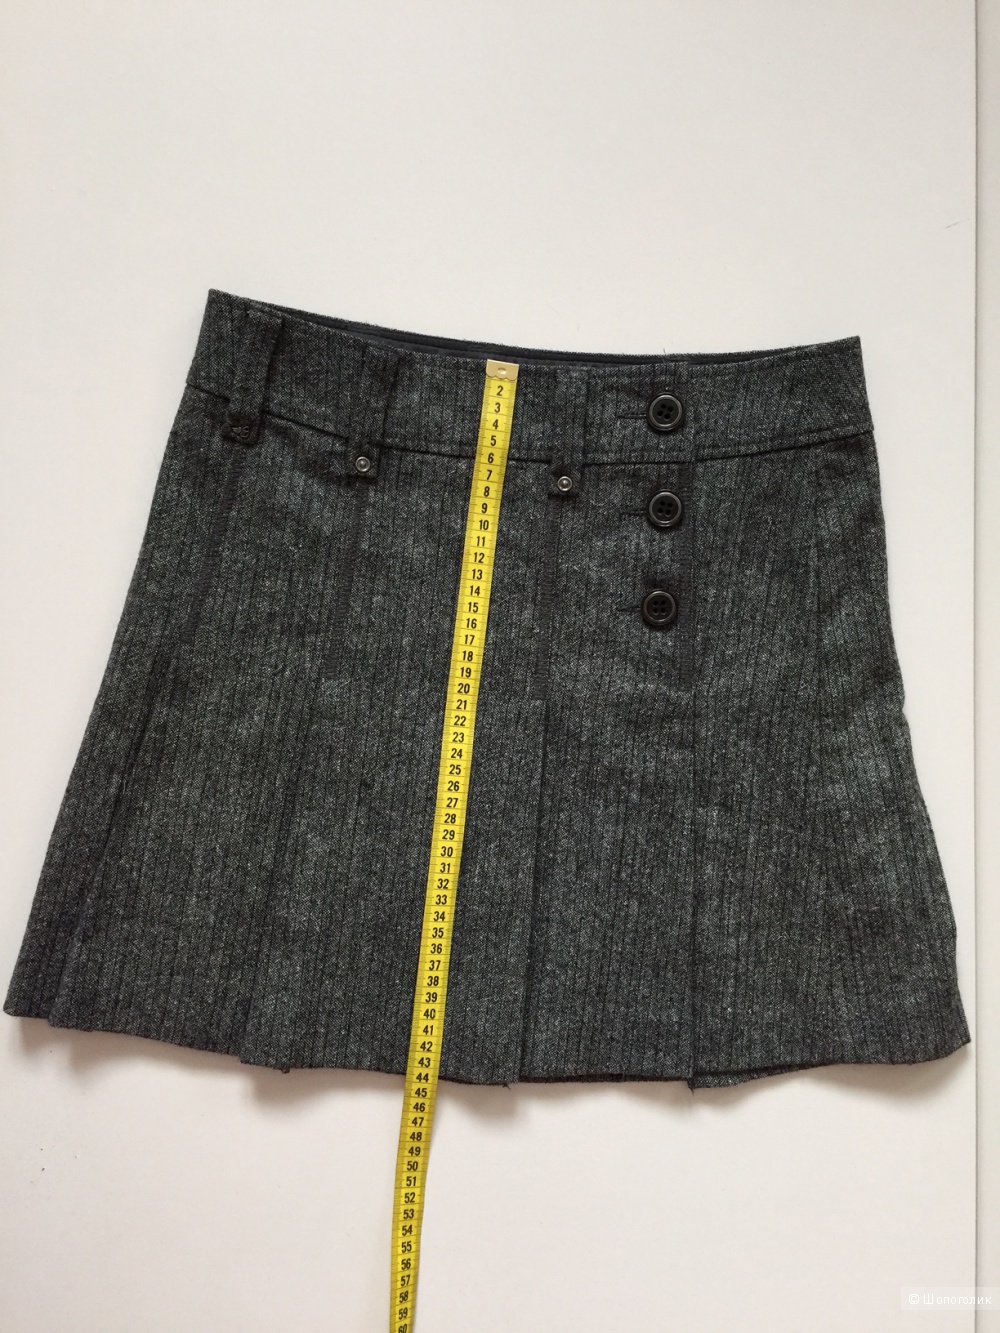 Короткая юбка в складку марки Esprit размер s